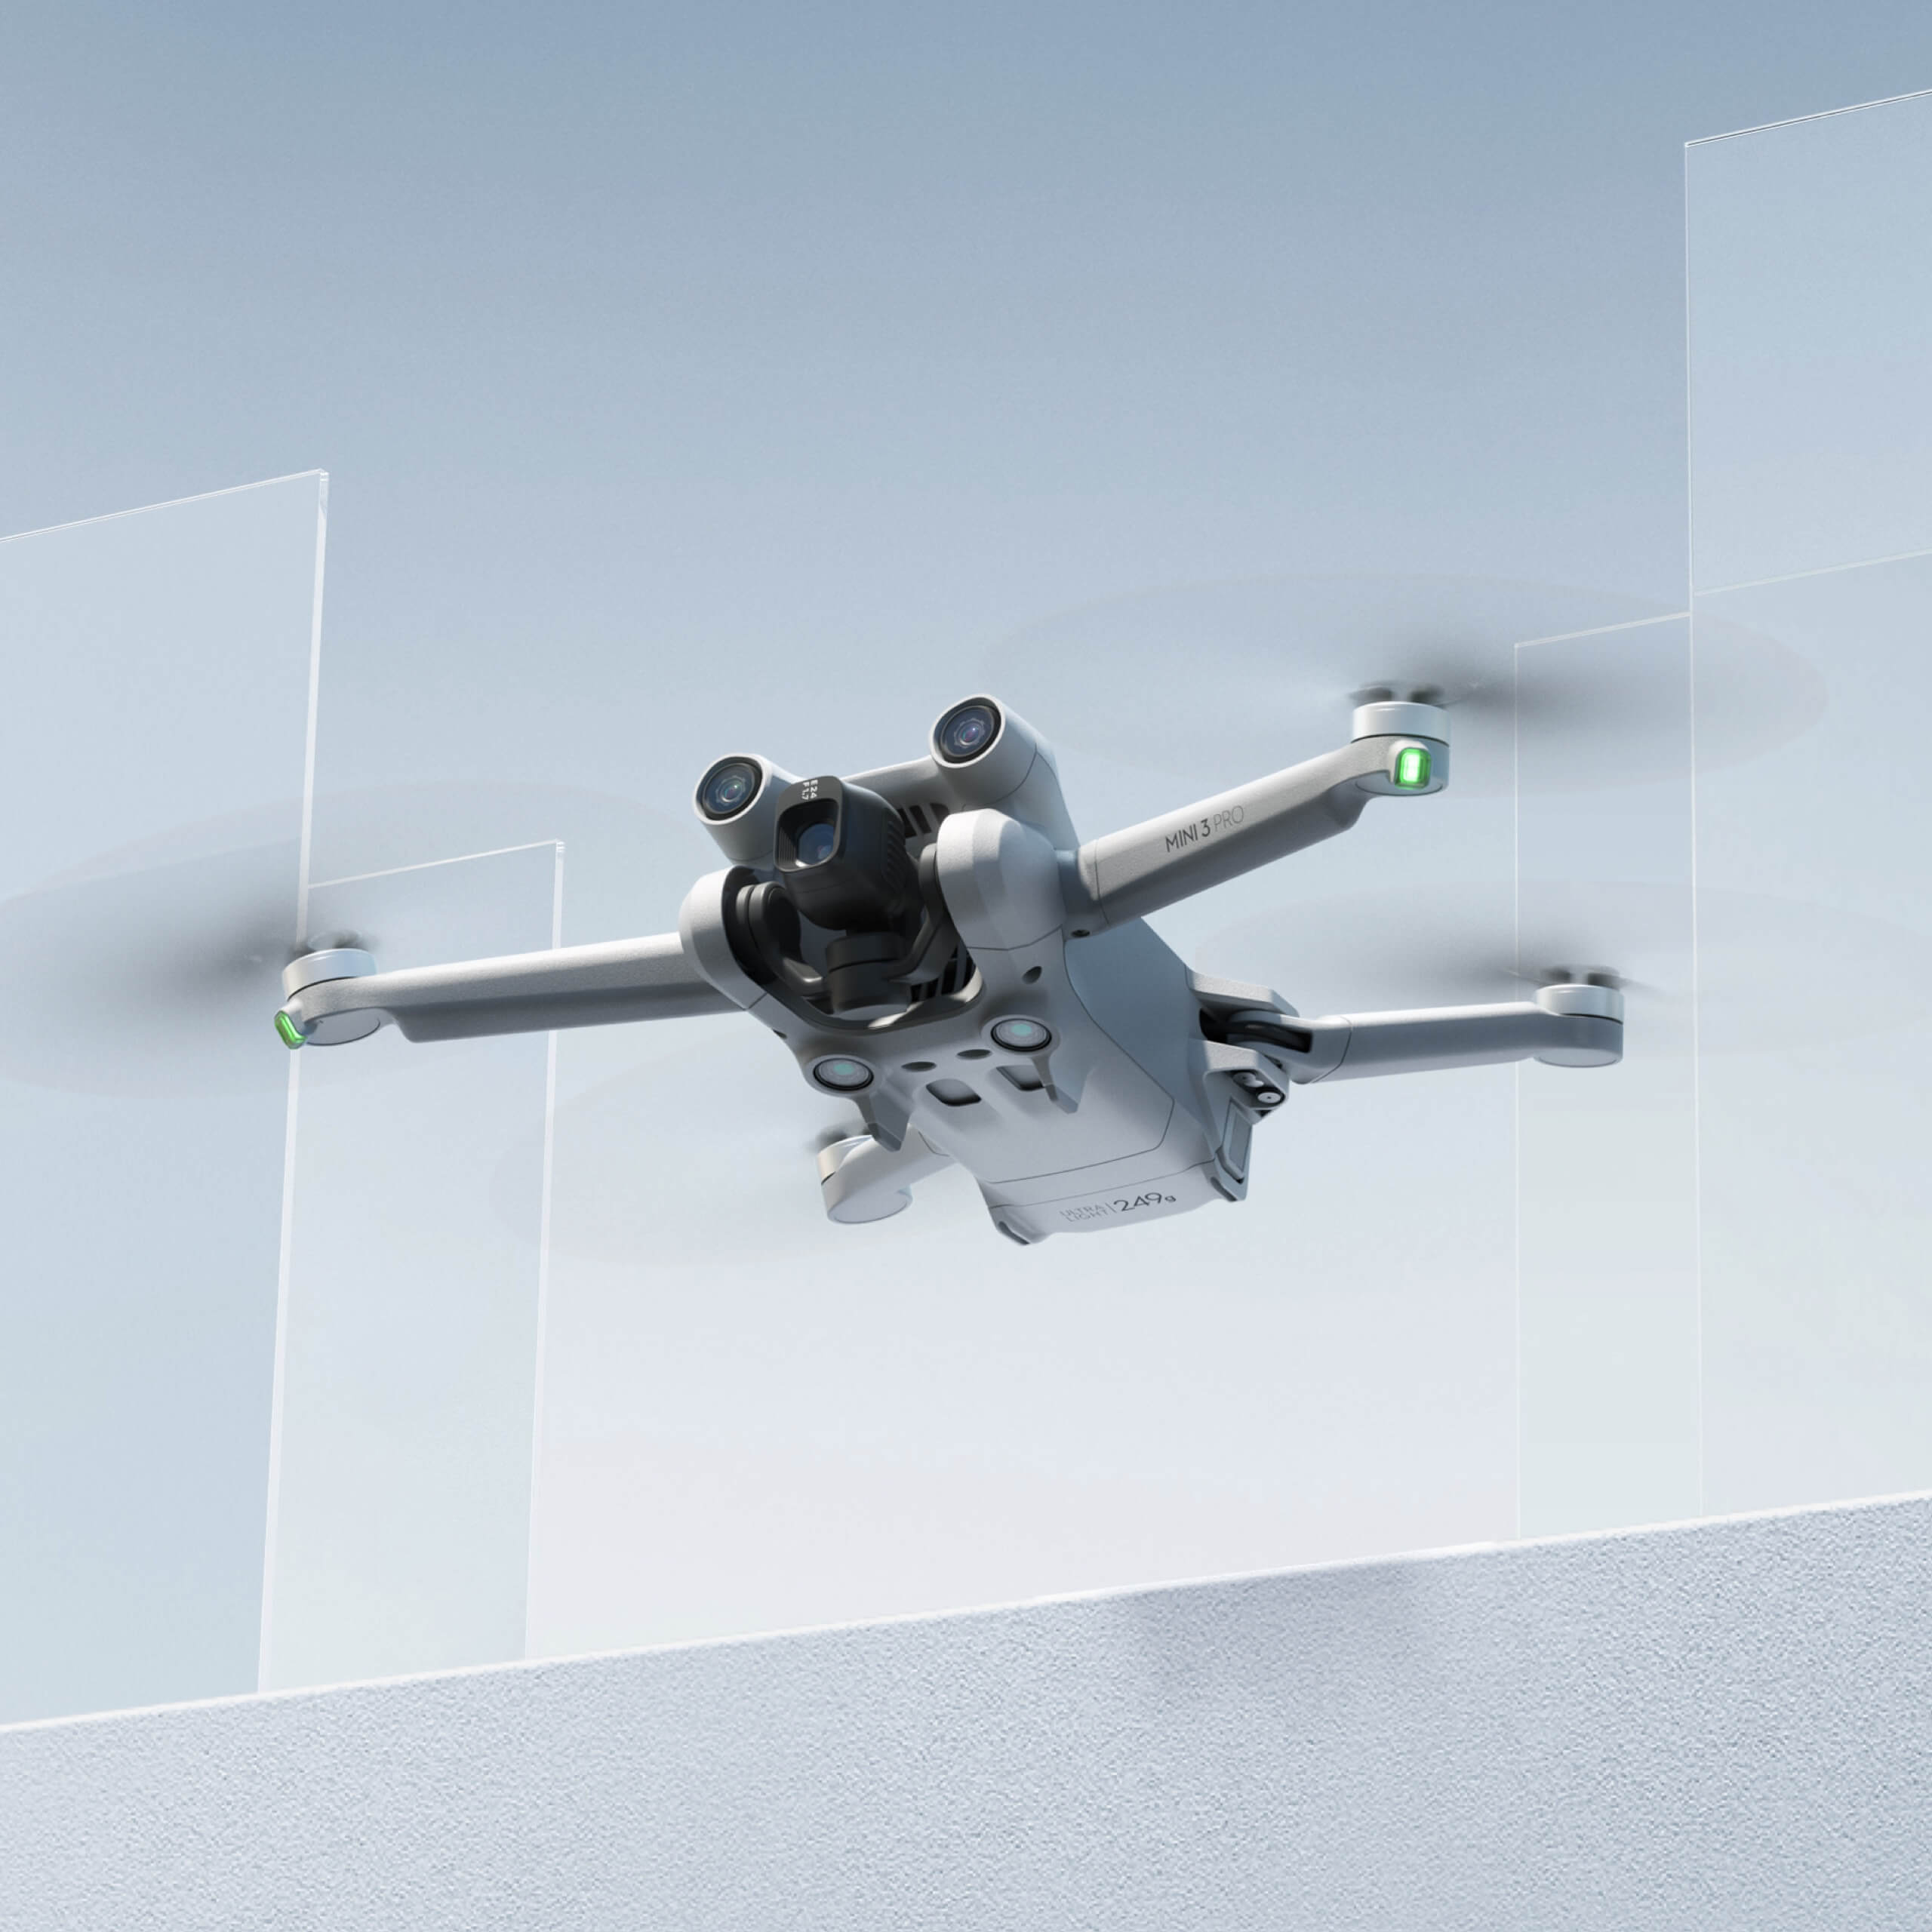 Drone Mini 3 Pro con DJI RC Remote: Fotografía aérea profesional